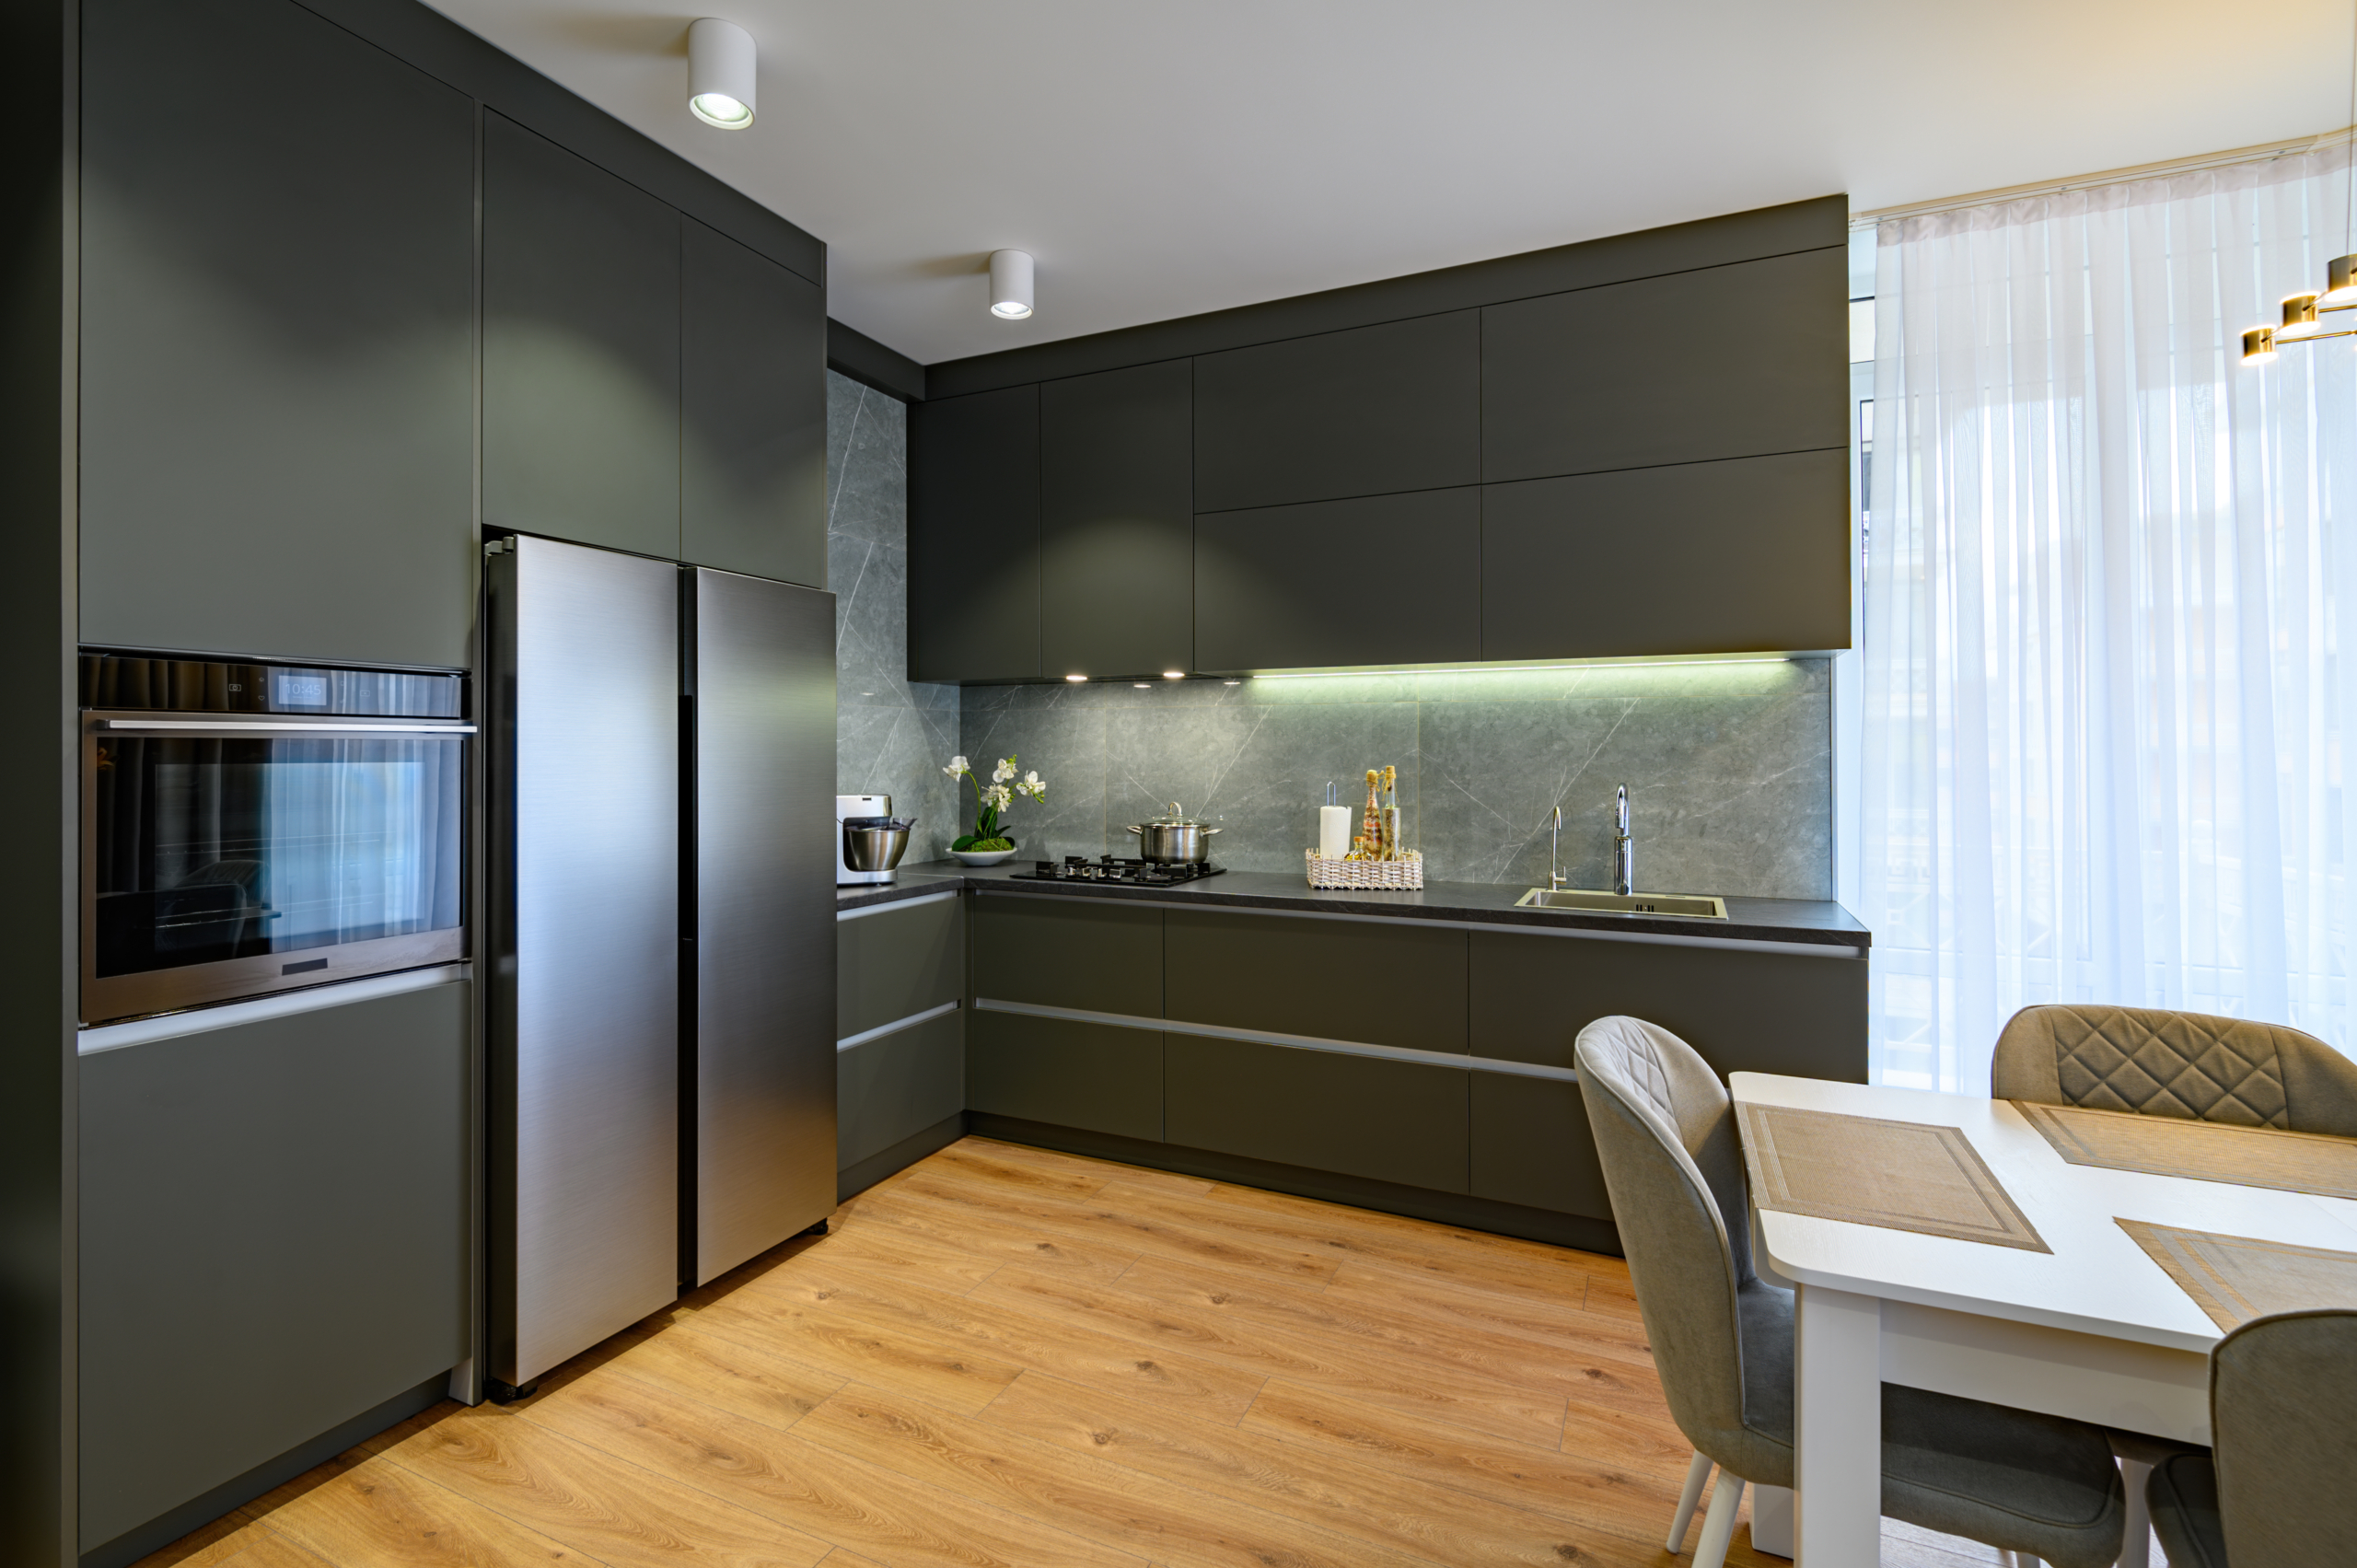 Modular Kitchen Design Ideas  Blog  DesignCafe